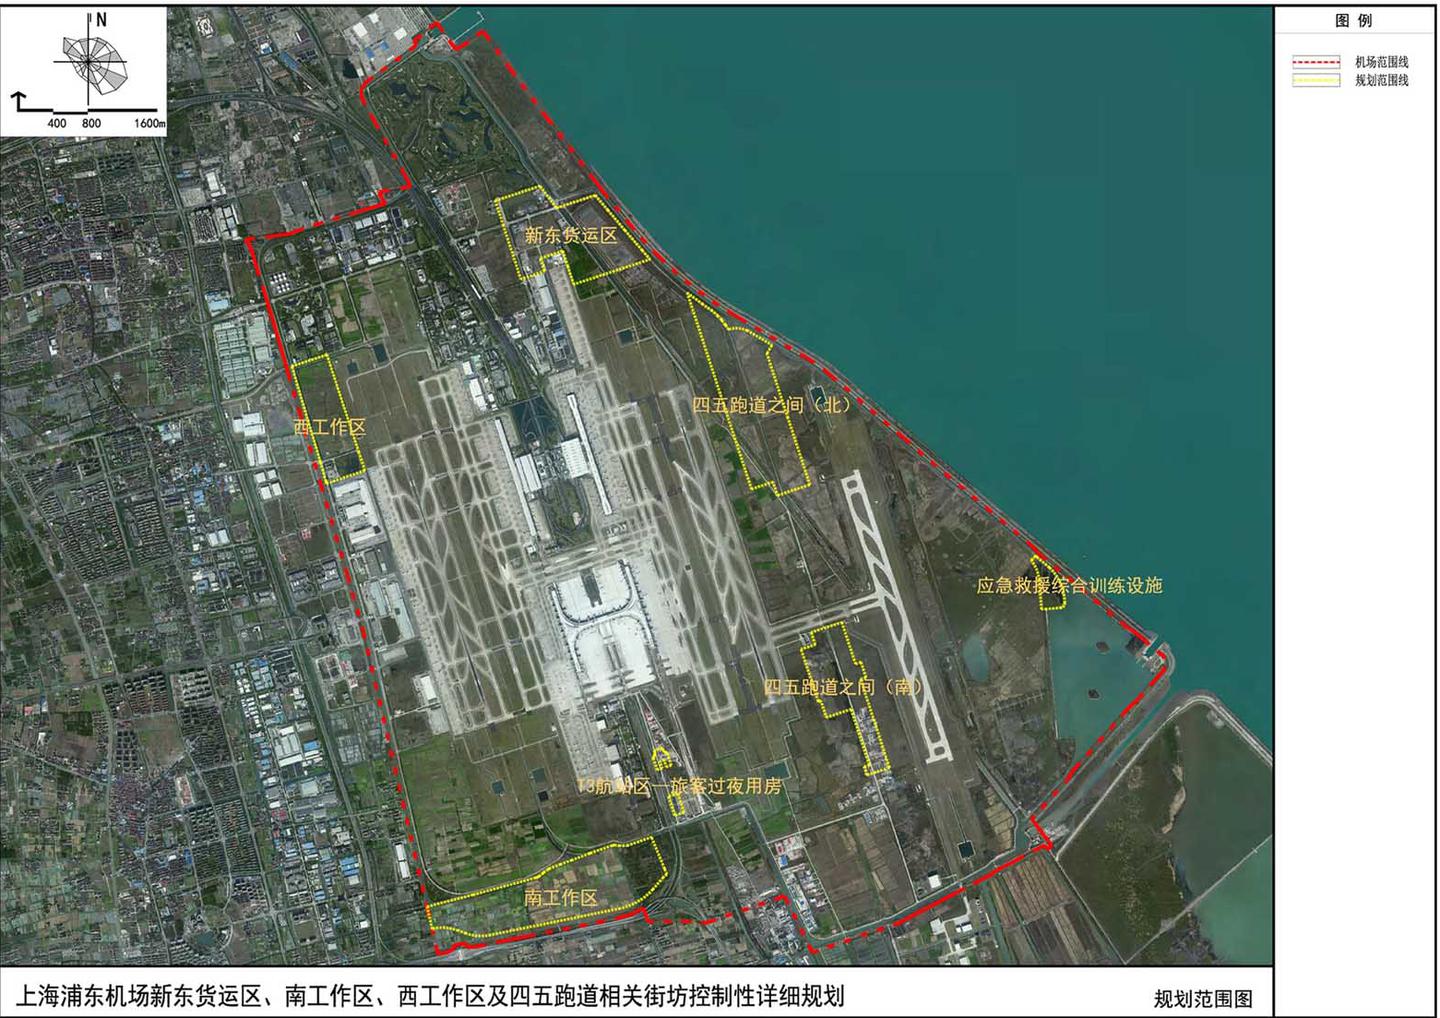 上海浦东机场t3芳容初露全场货运设施布局呈包围状